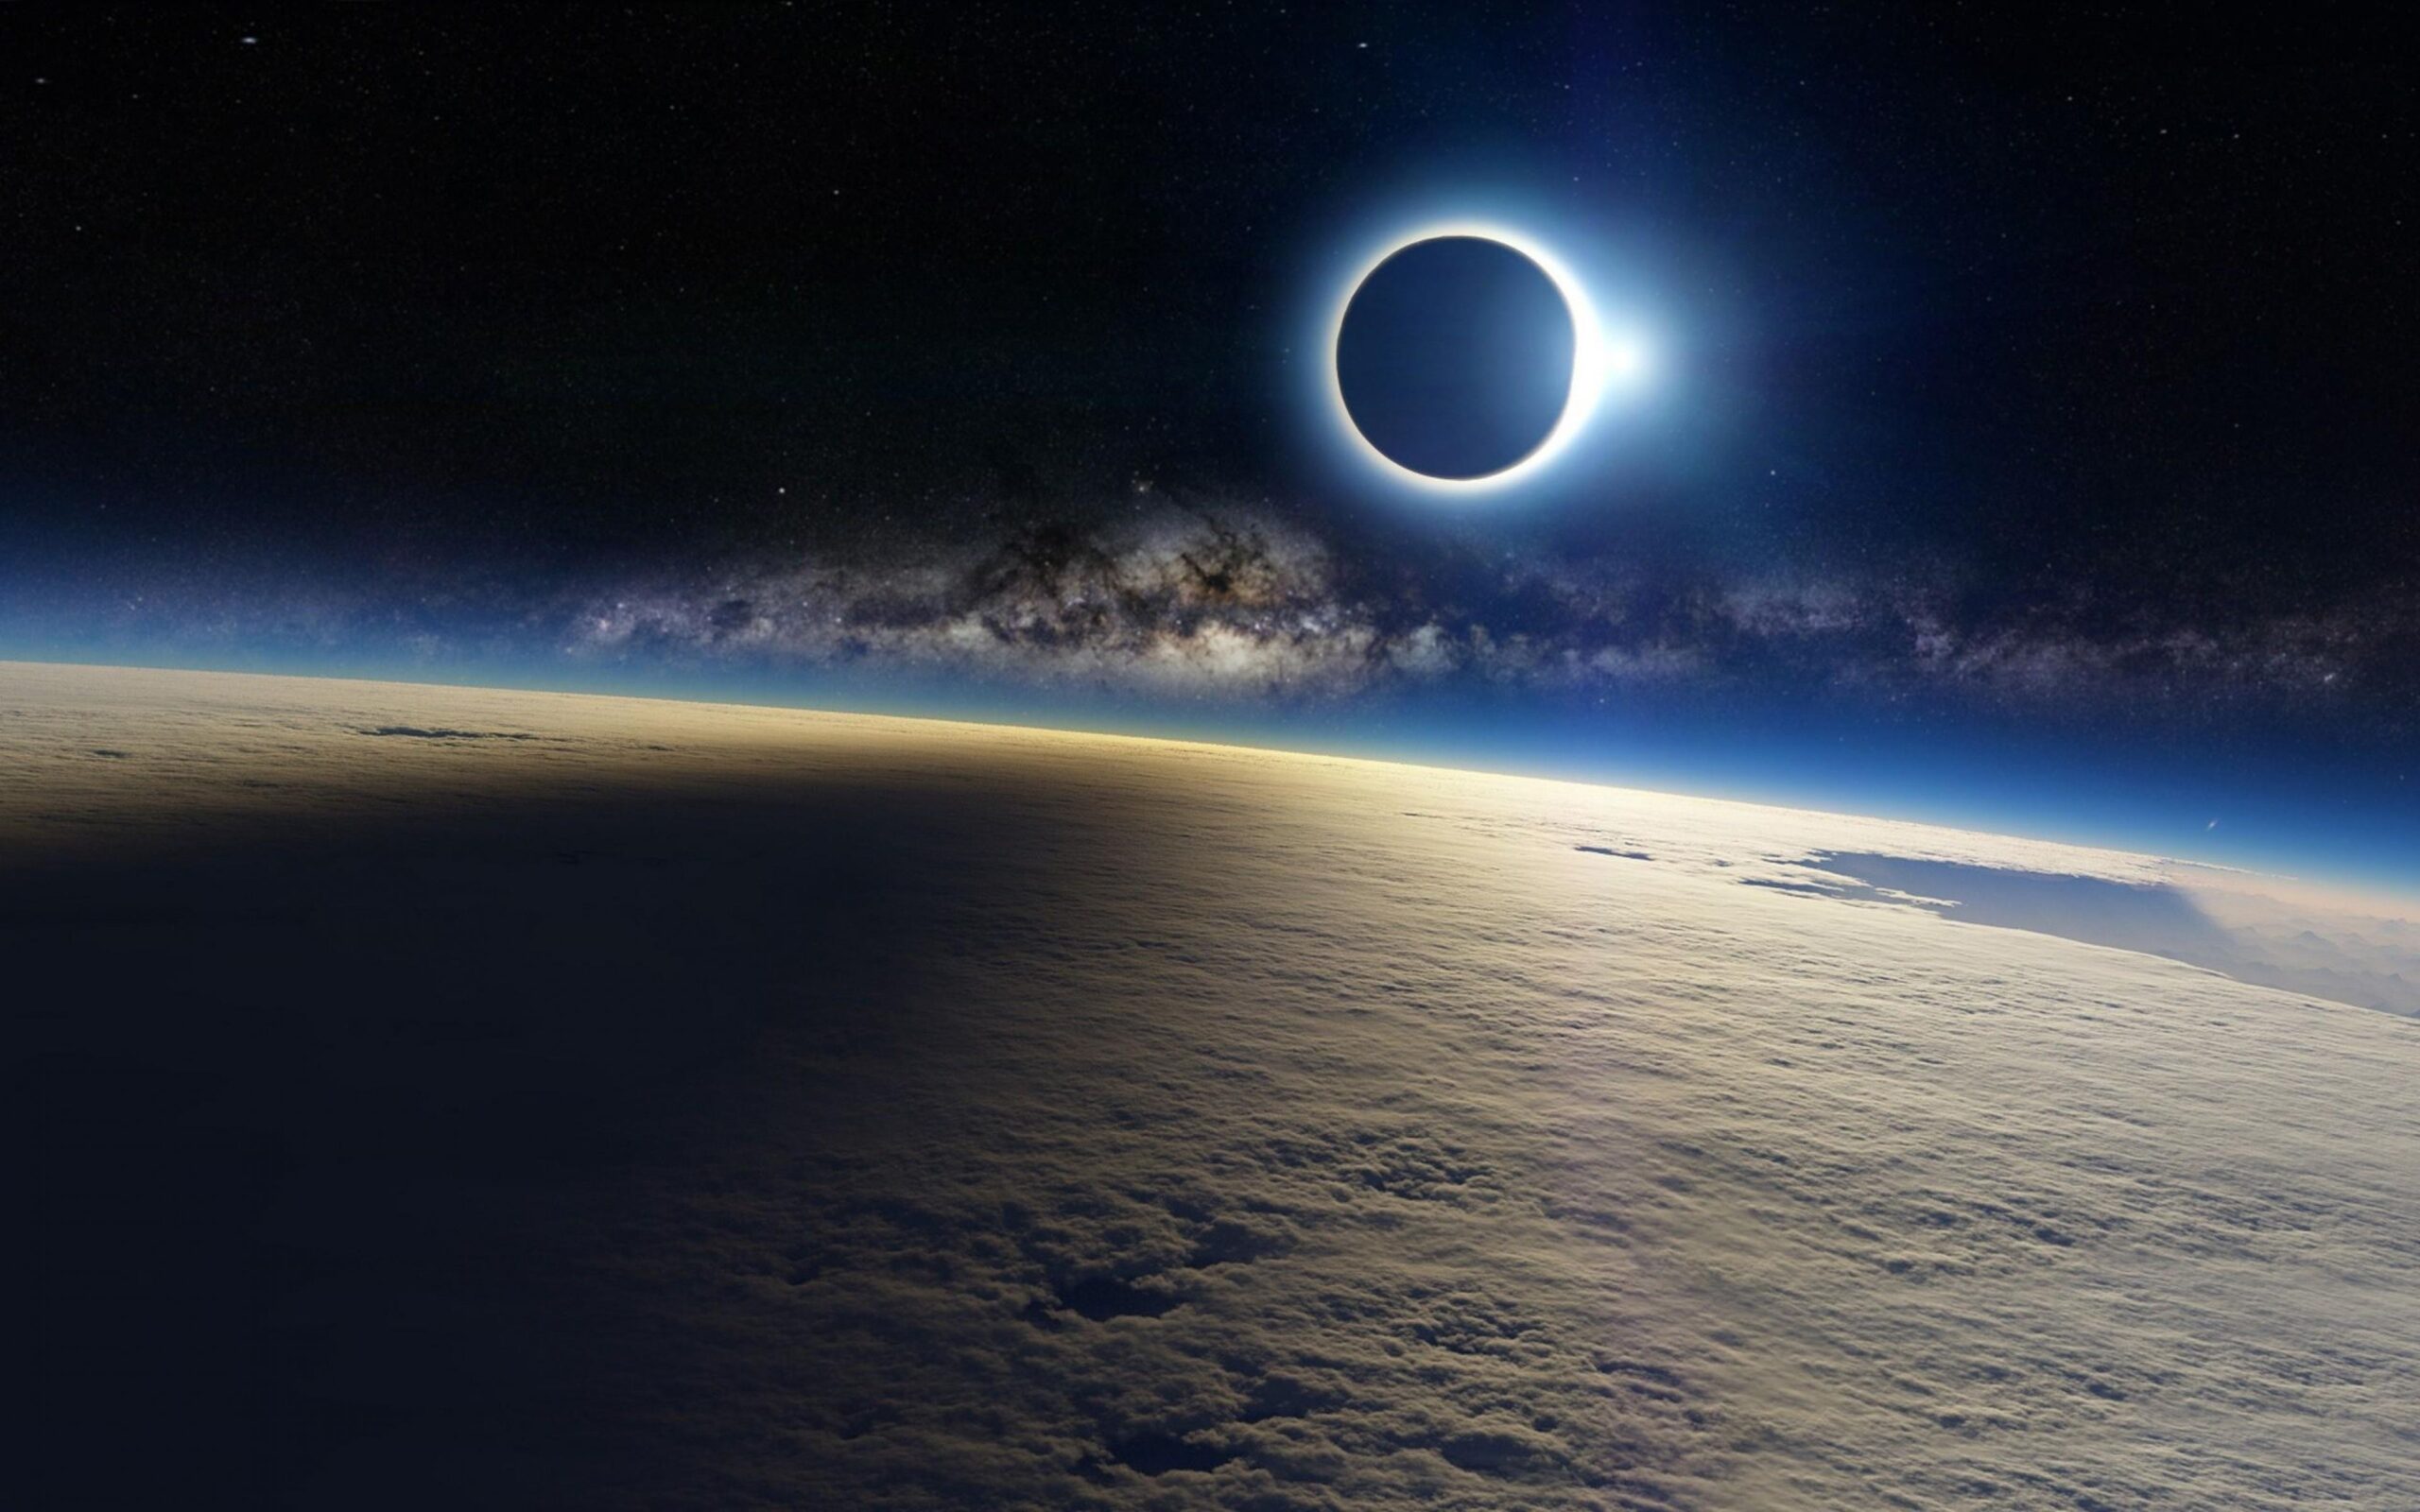 Астронавты на МКС трижды увидят полное солнечное затмение 8 апреля